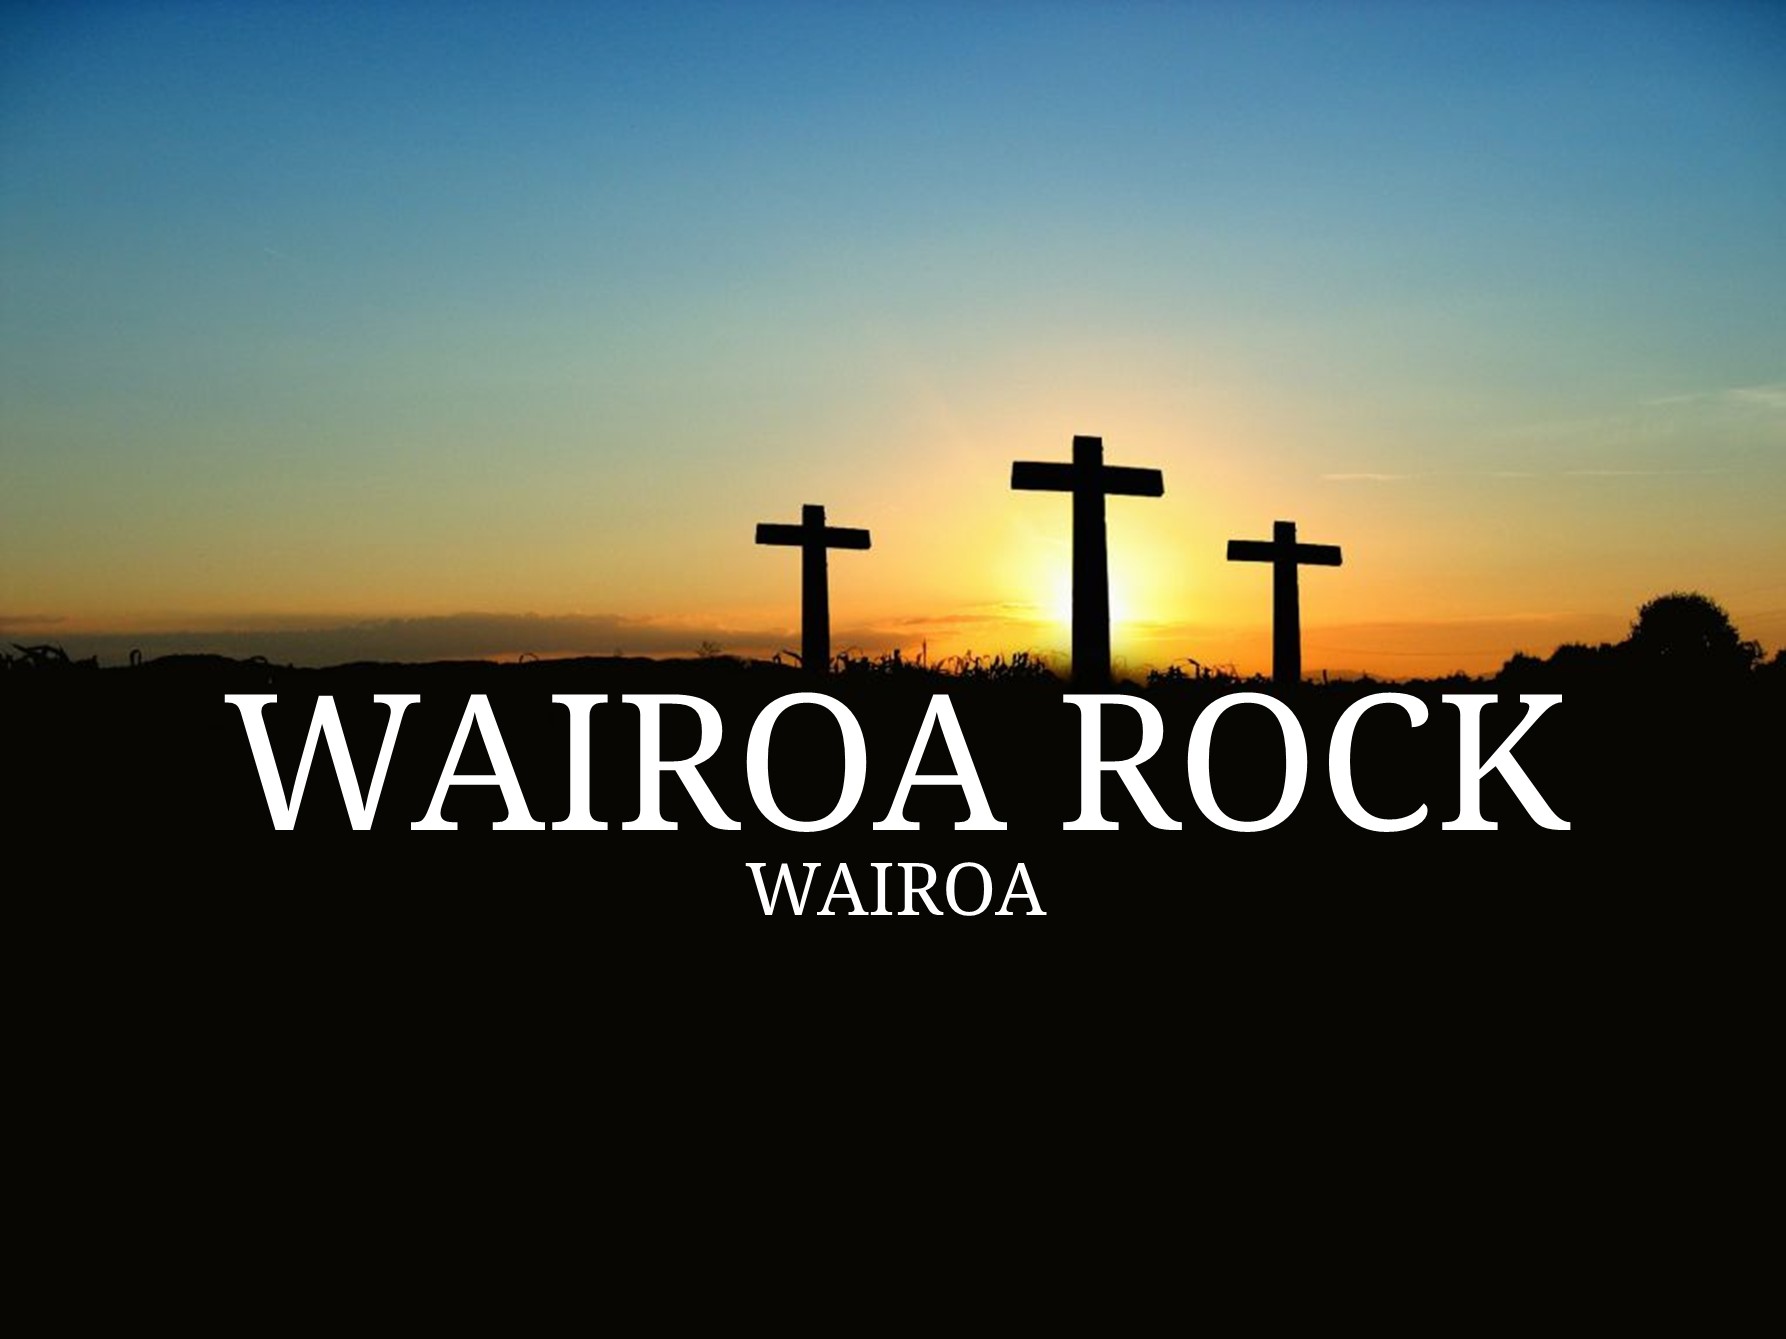 Wairoa Rock